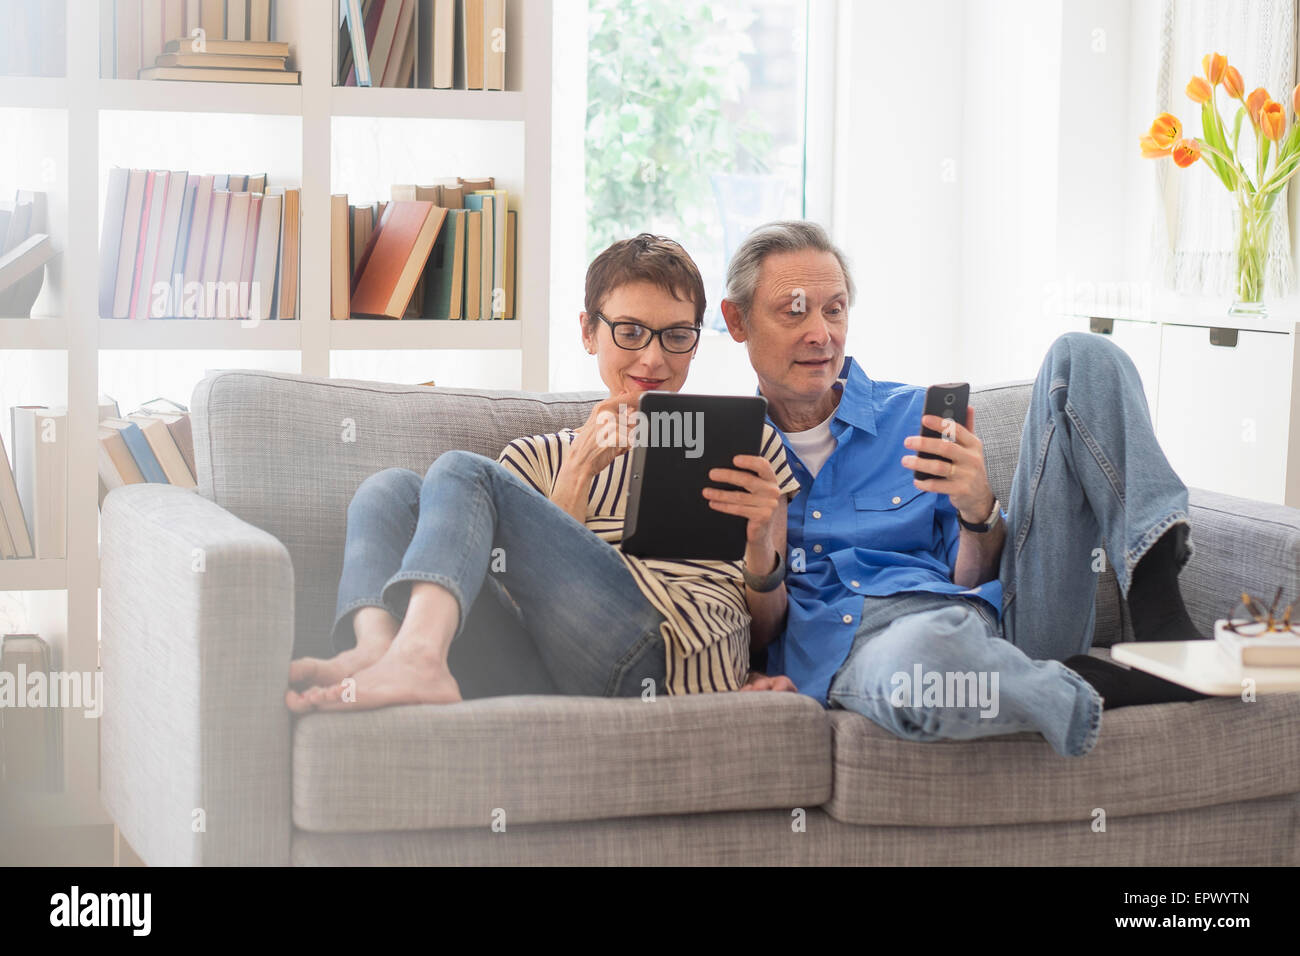 Senior couple sharing electronic devices on sofa Stock Photo